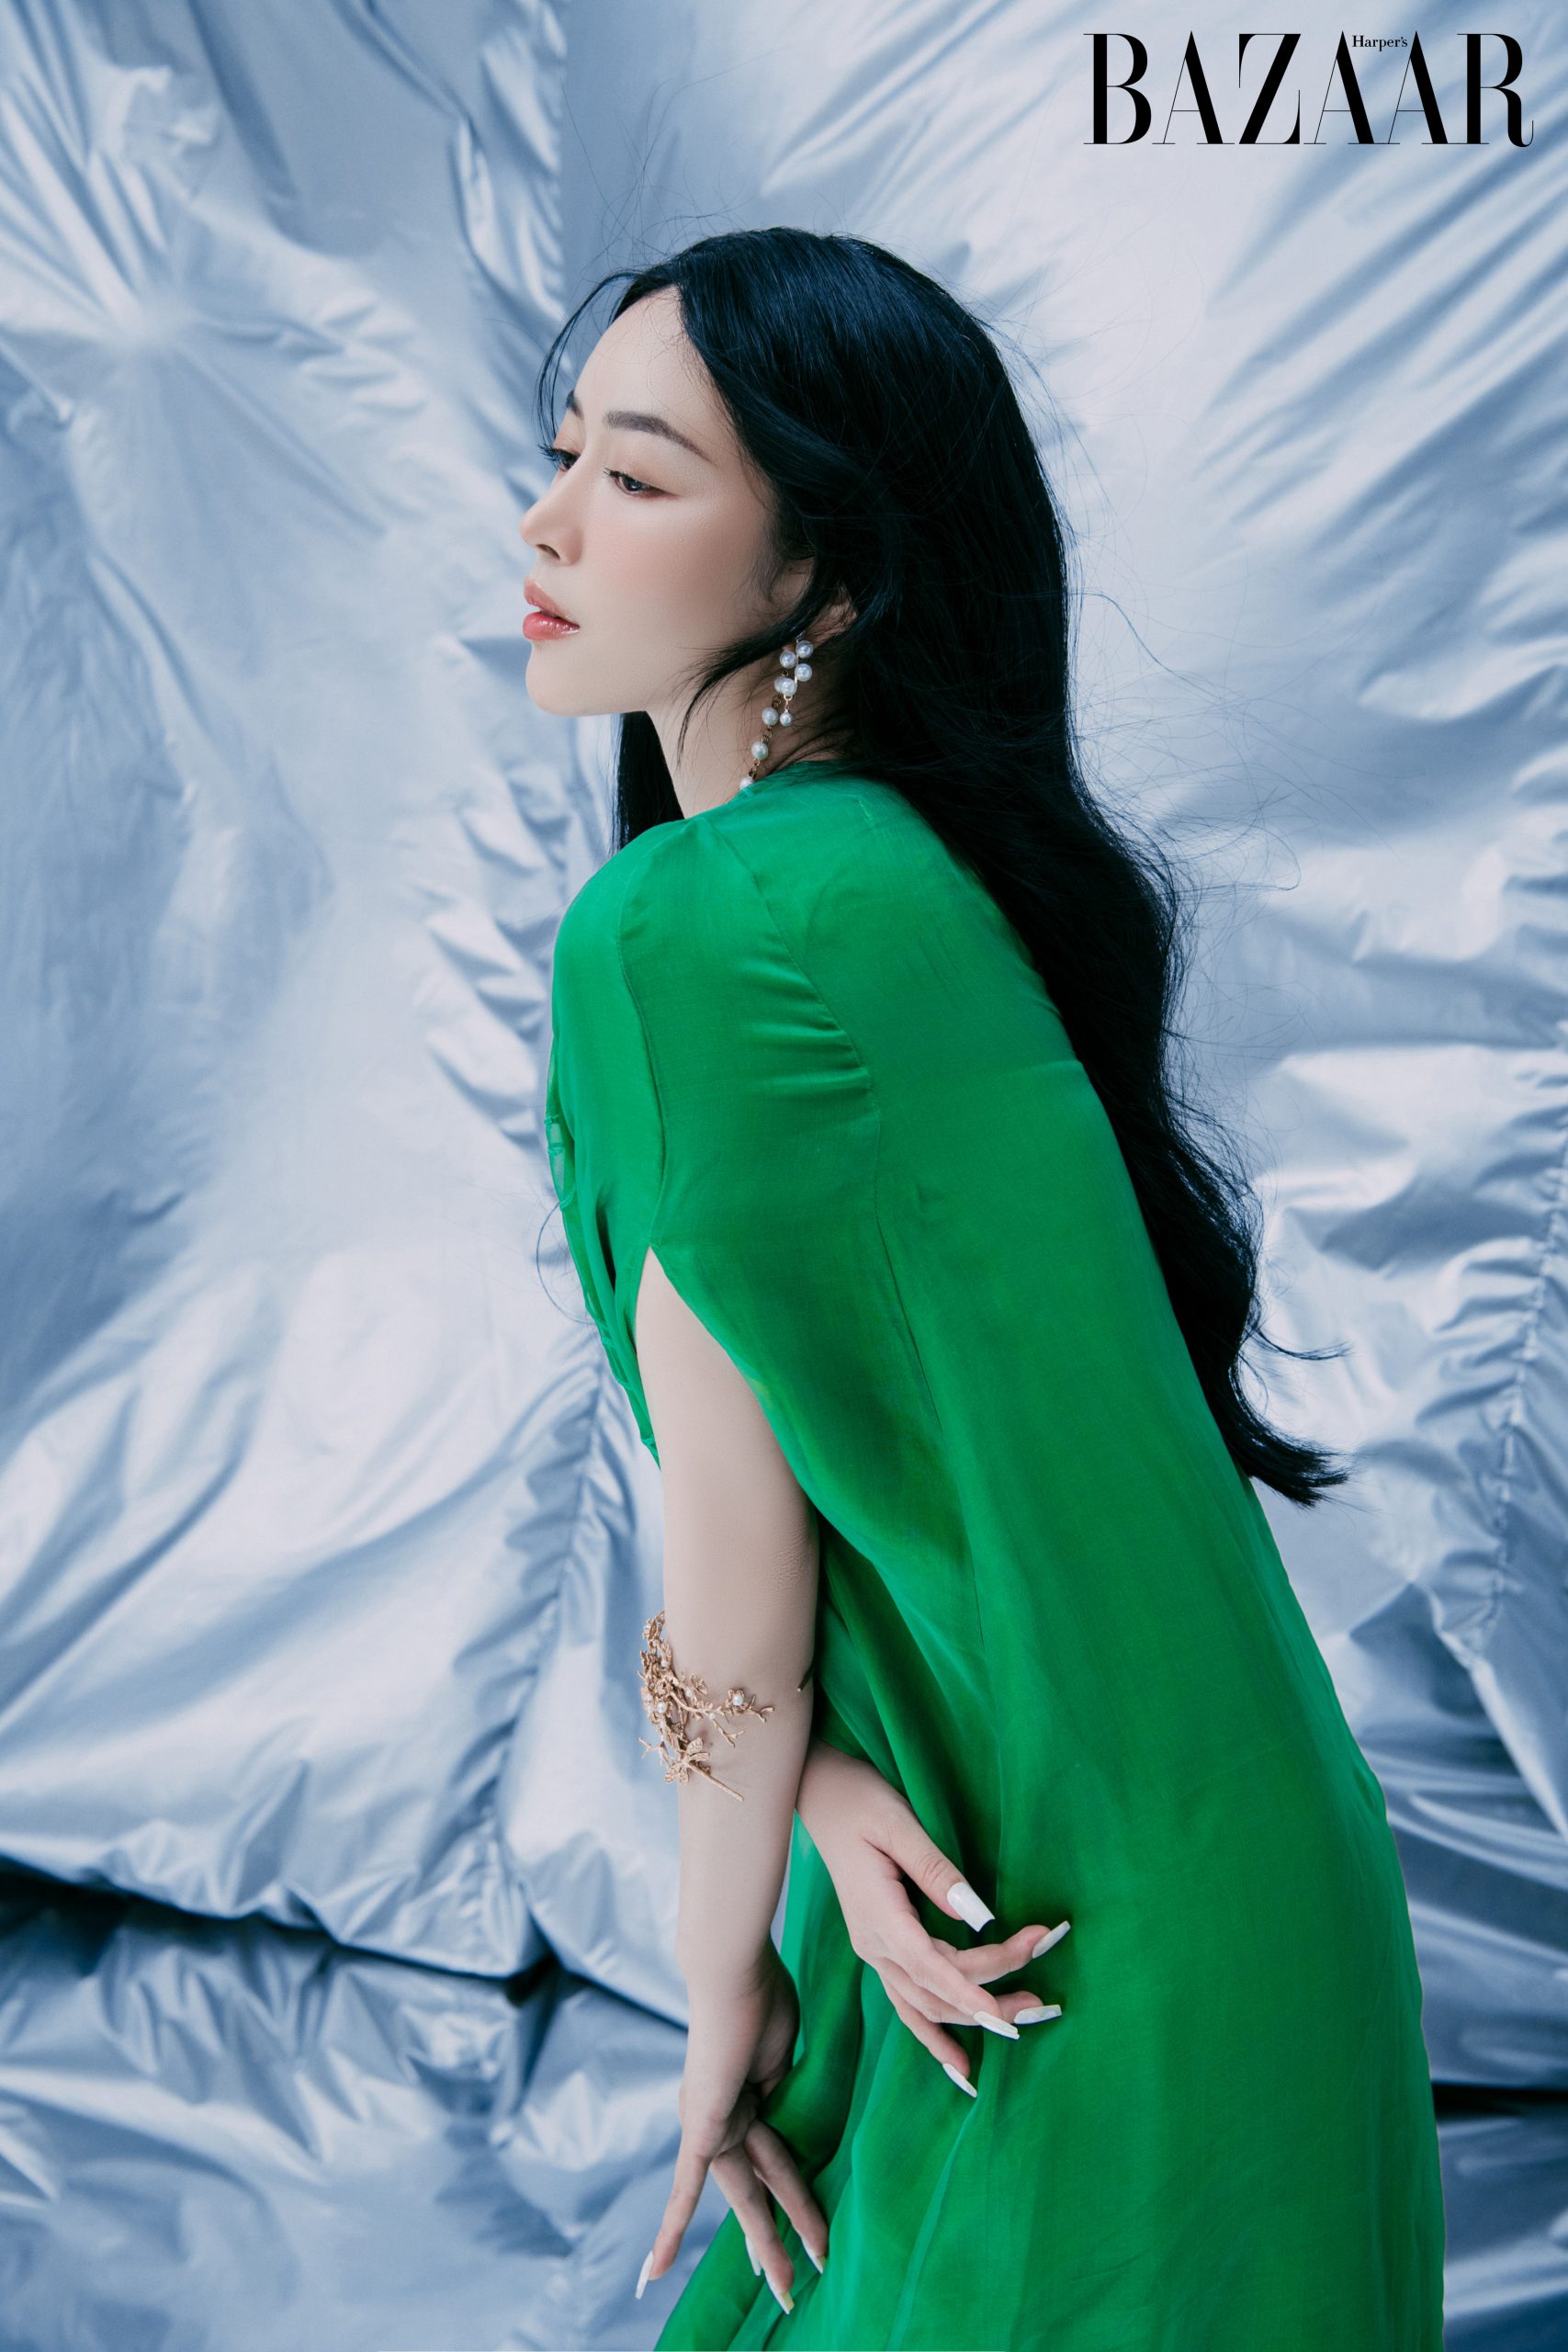 Harper's Bazaar_Mai Thanh Hà và Hoàng Ku bộ ảnh_01